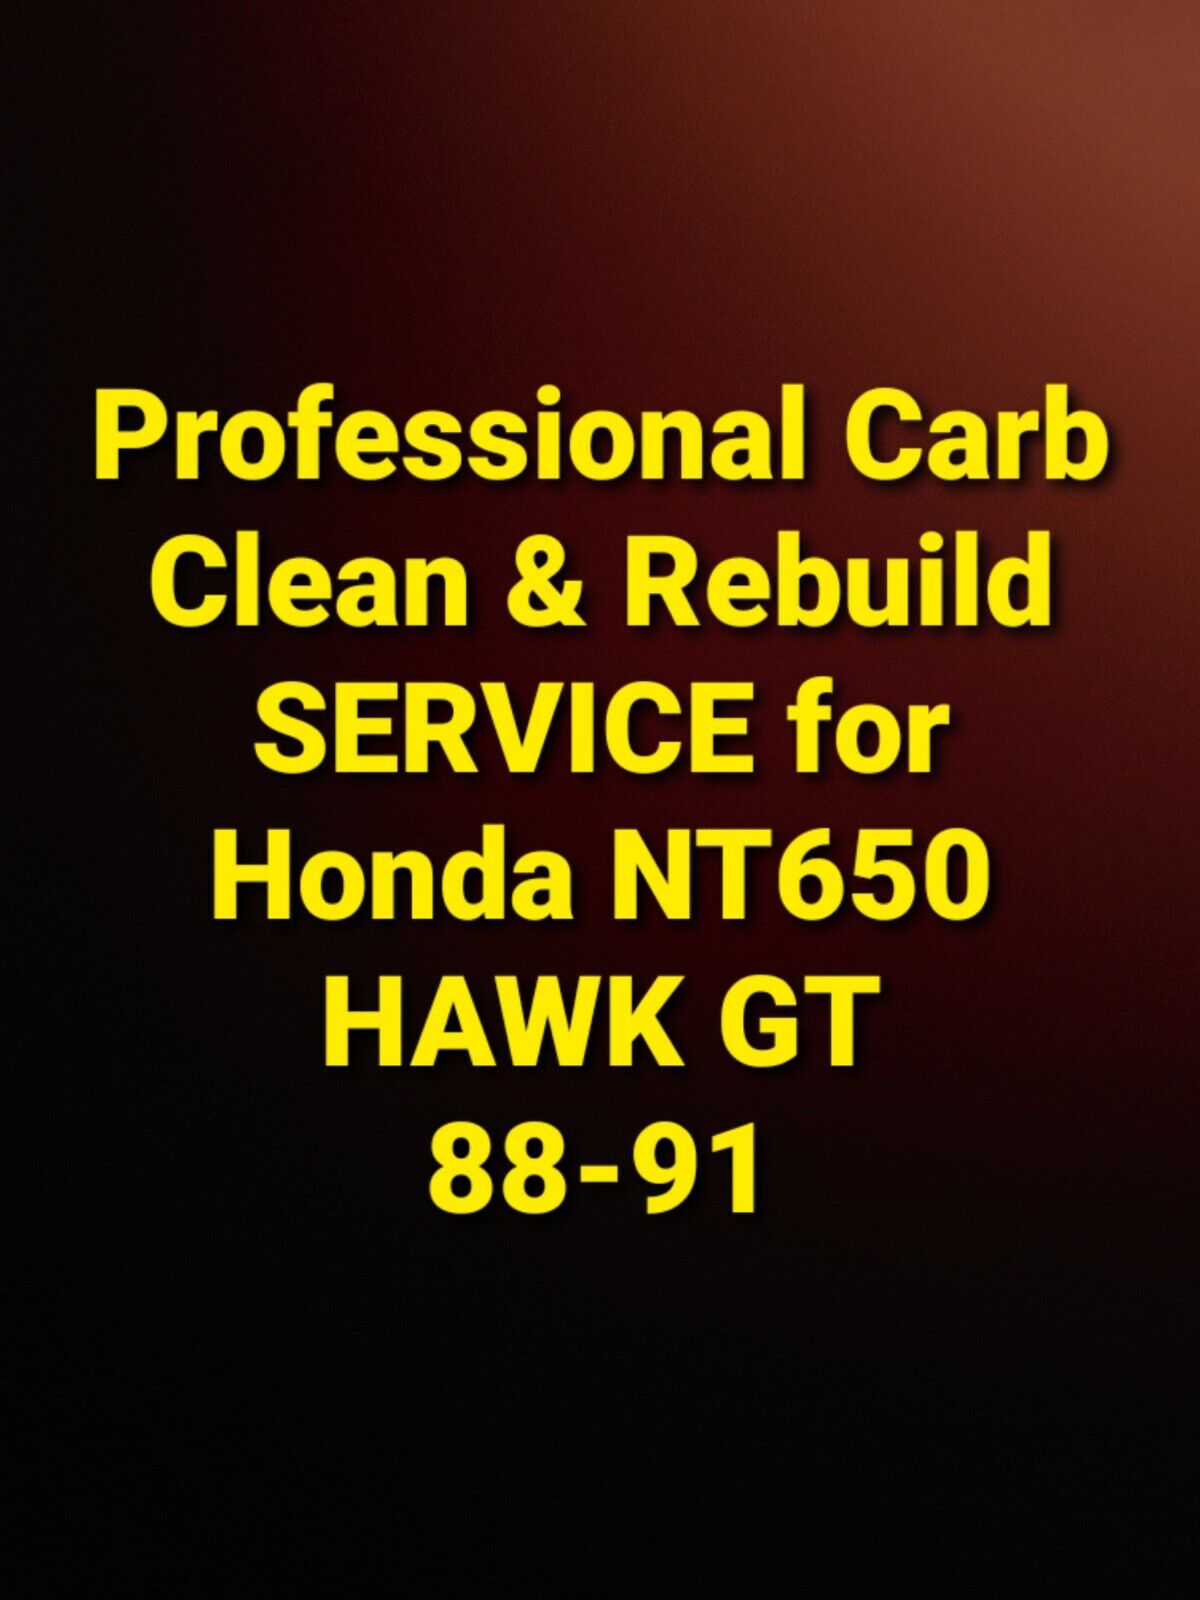 88-91 Honda NT650 HAWK GT Professional Carb Clean & Rebuild Service